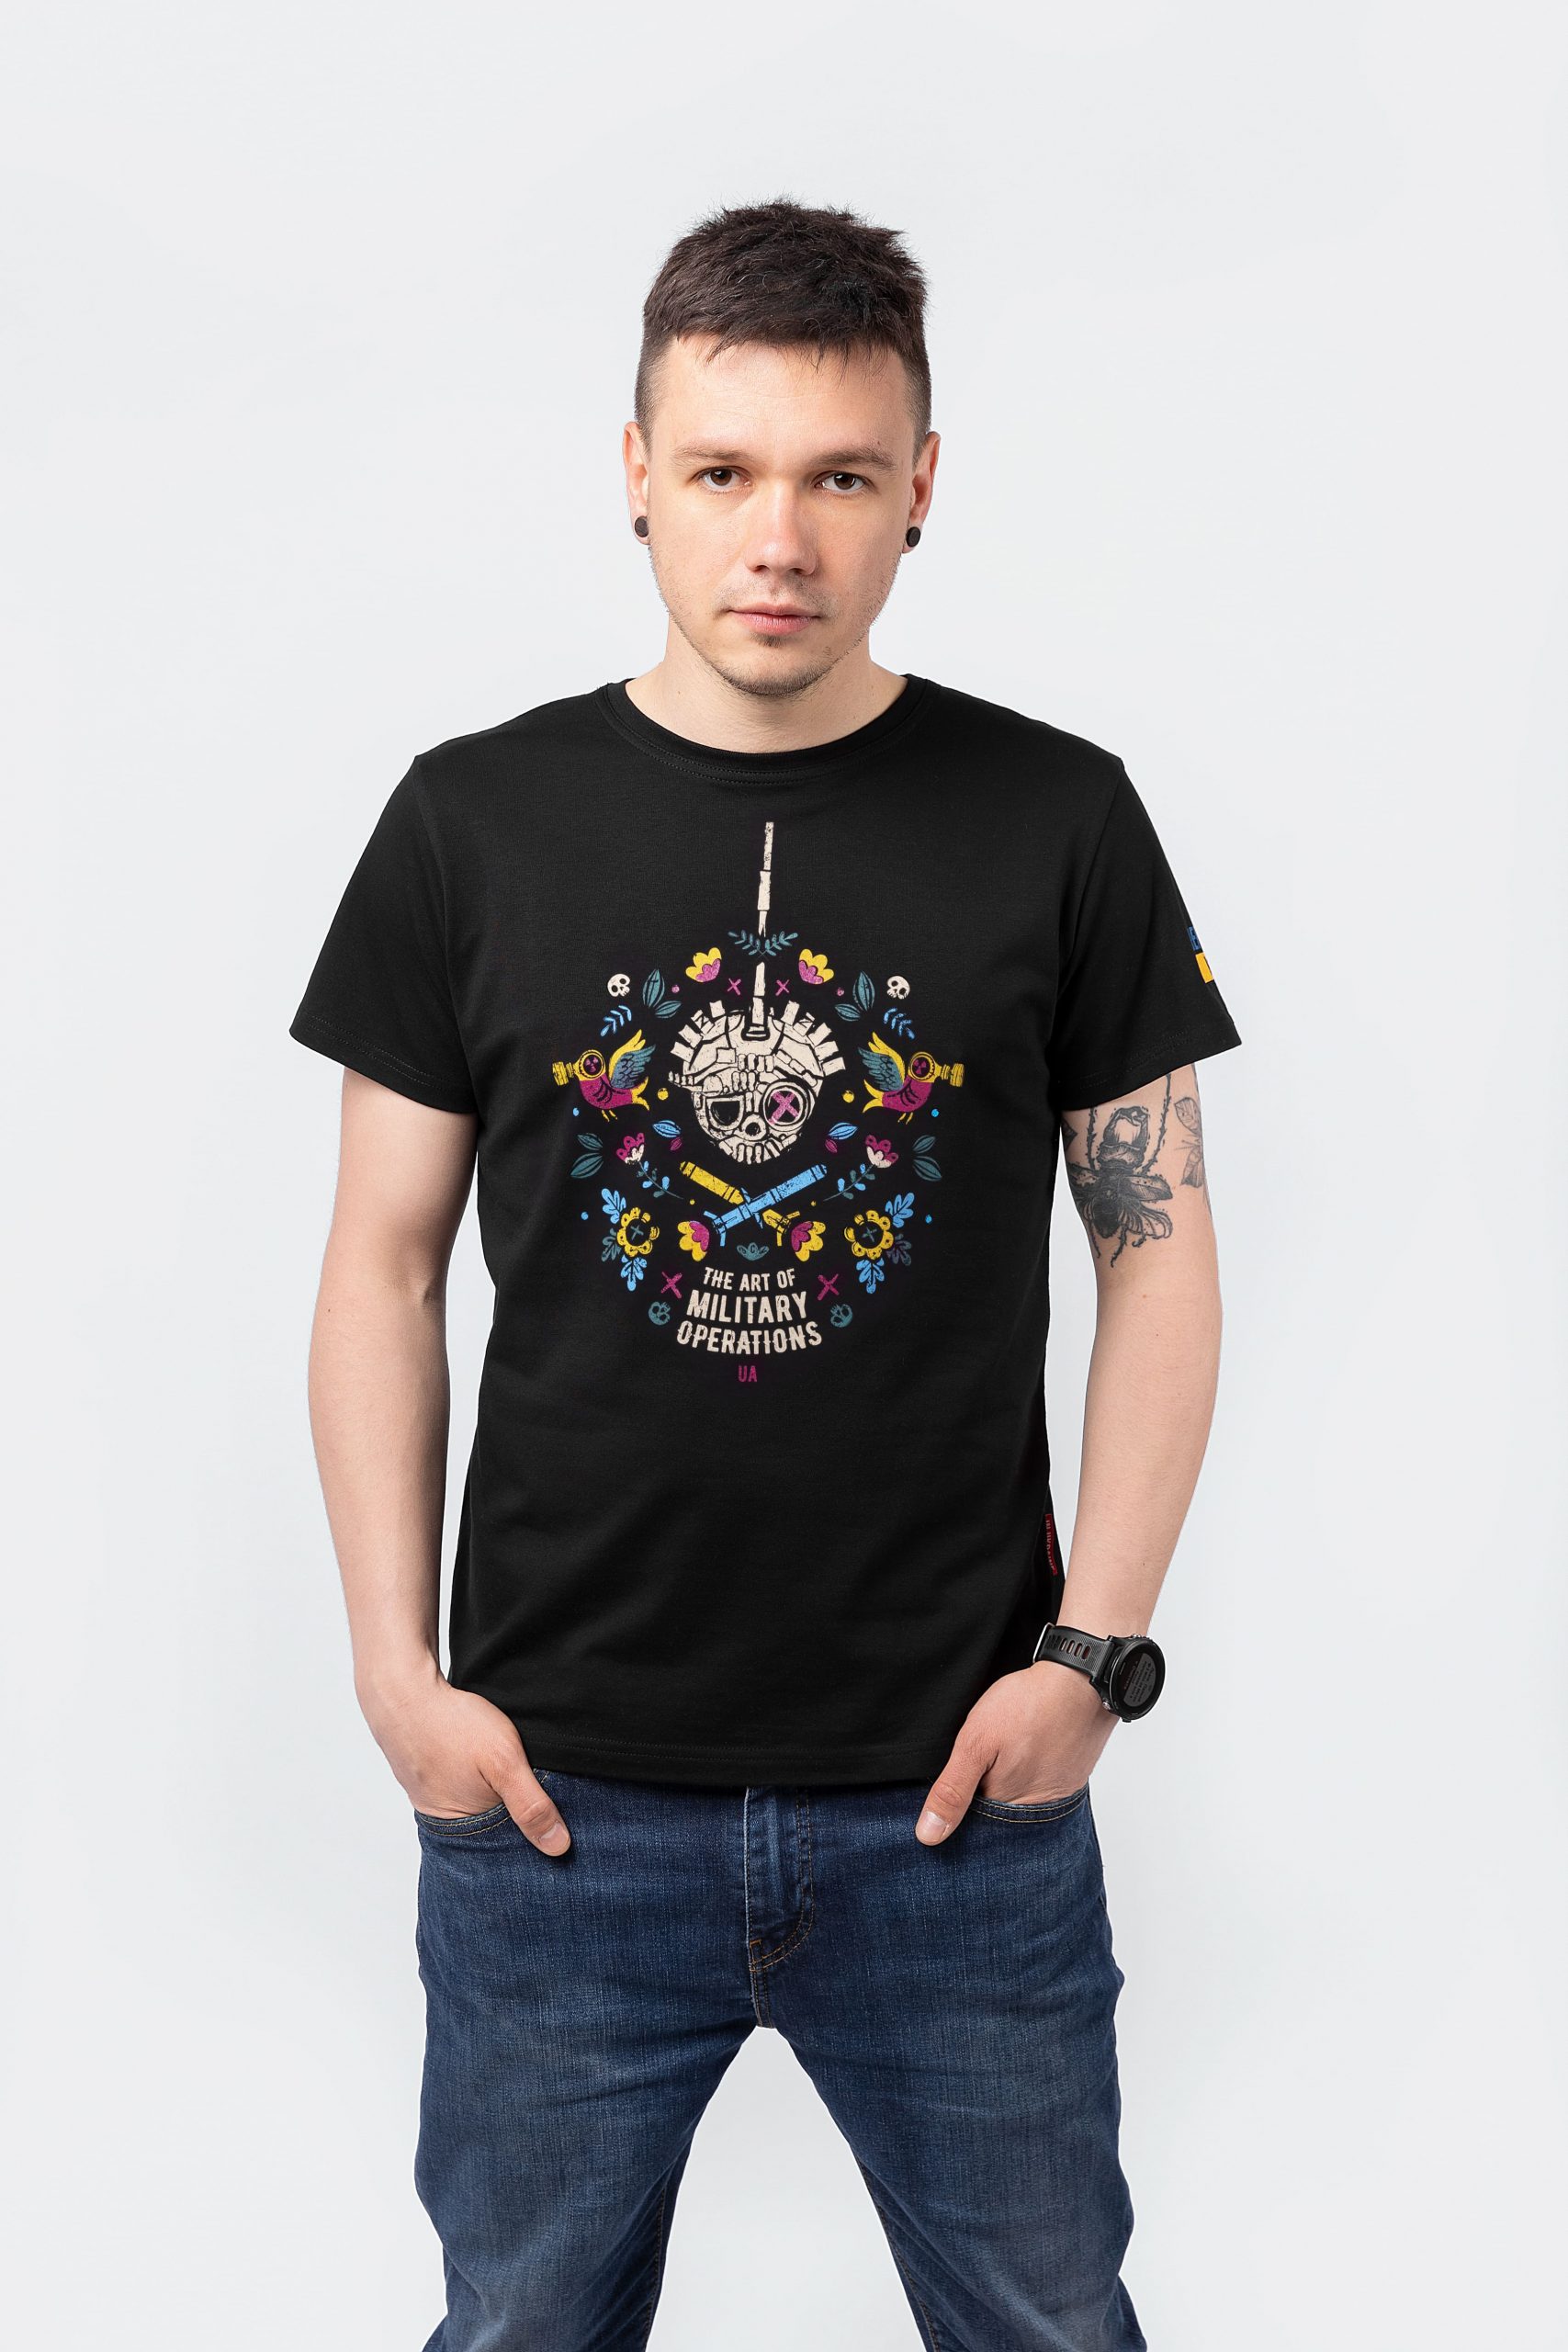 Men's T-Shirt Tank. Color black.    Unisex T-shirt (men’s sizes).